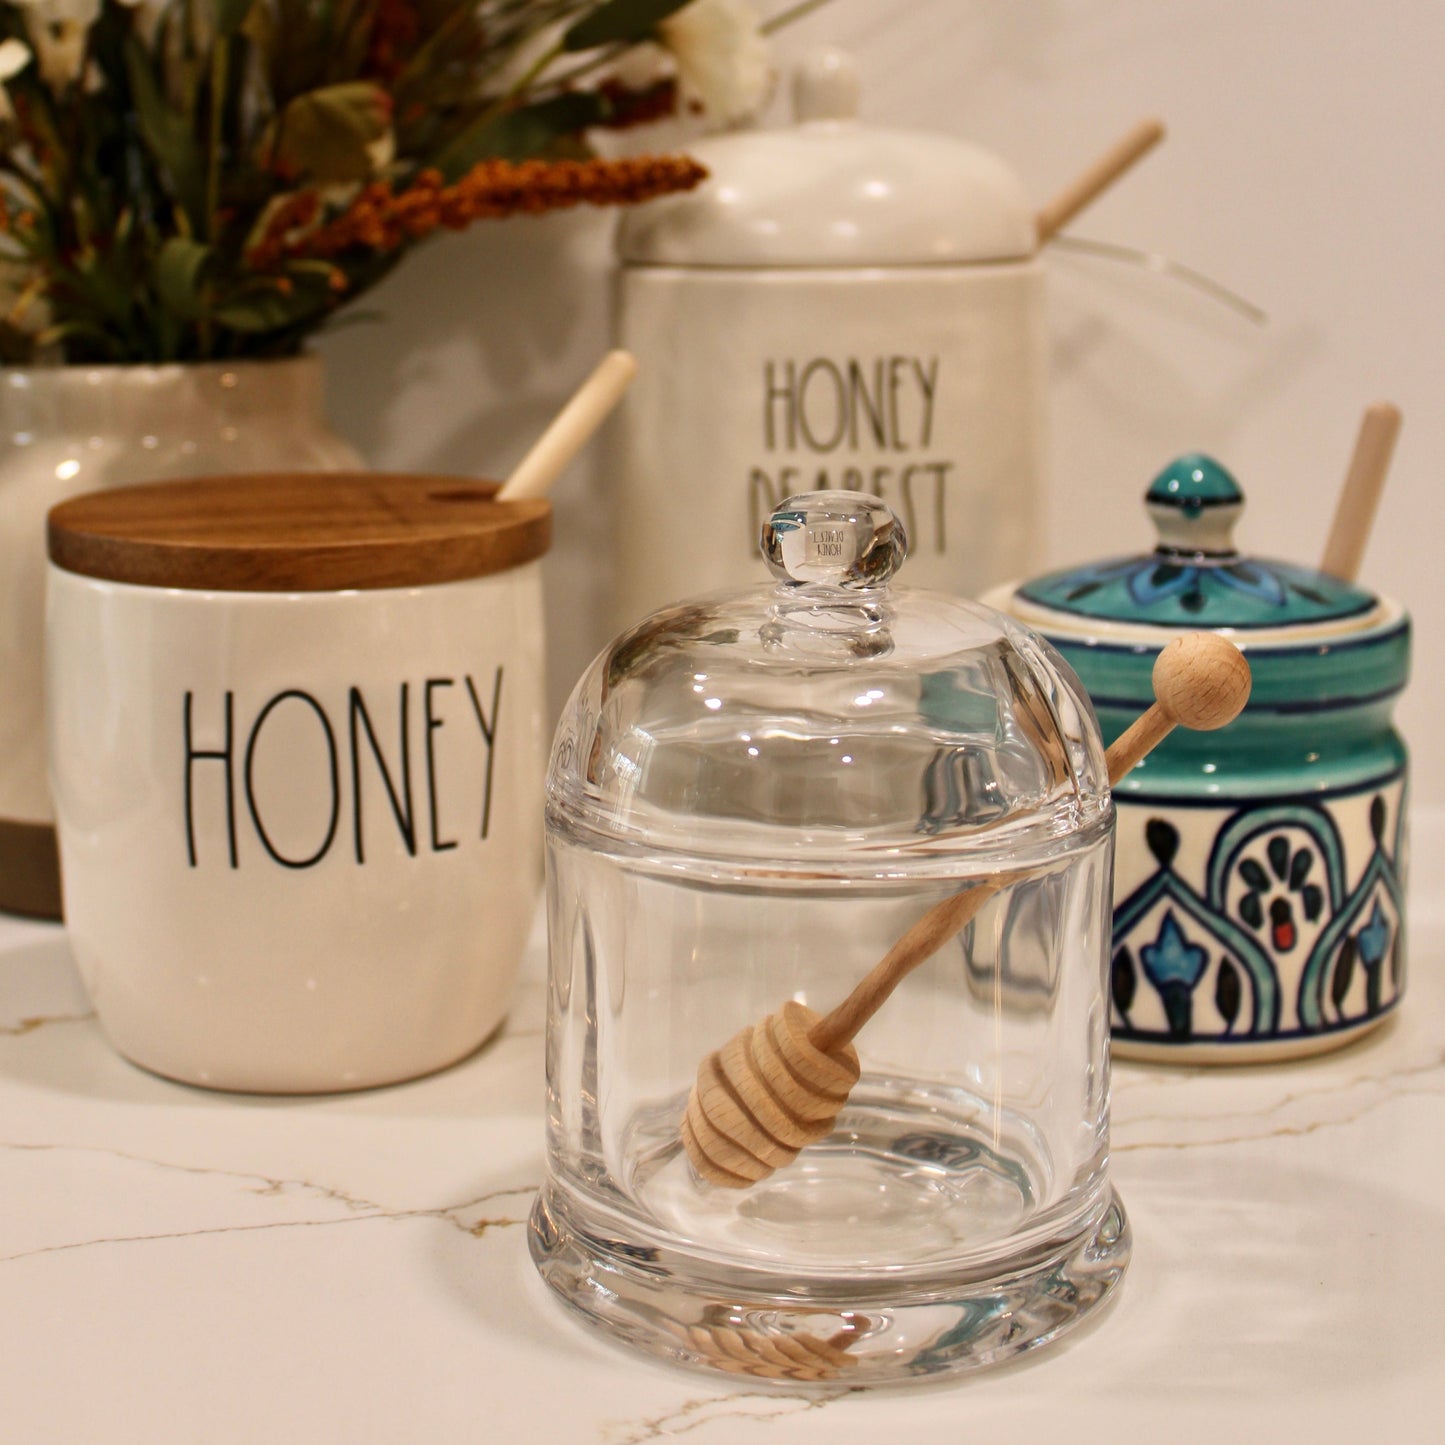 "Honey Dearest" Honey Pot